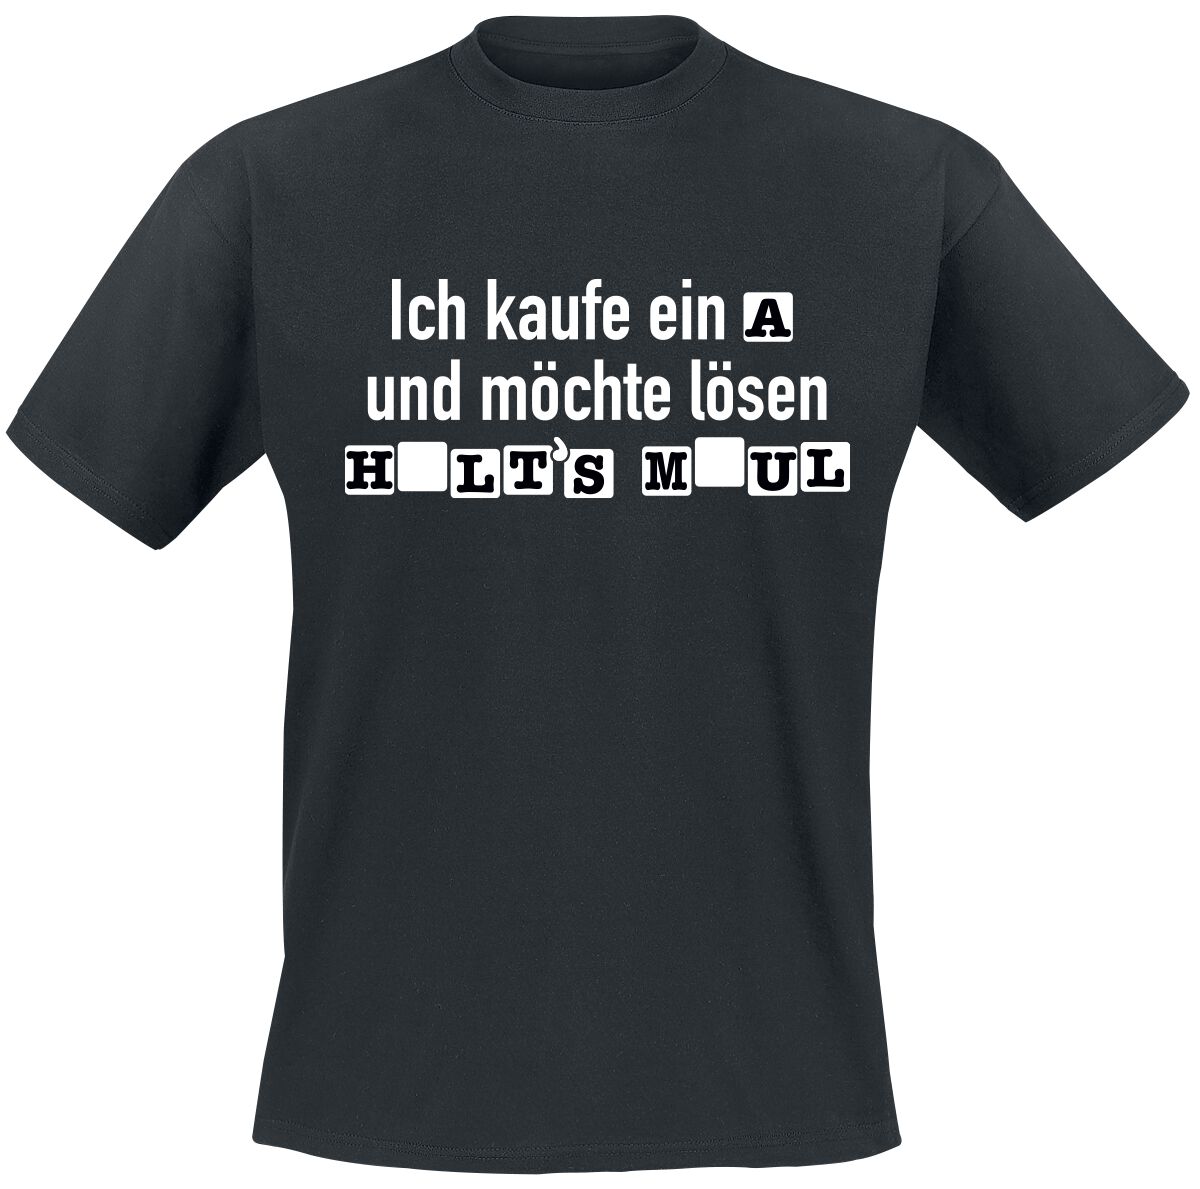 Sprüche T-Shirt - Ich kaufe ein A und möchte lösen - S bis 4XL - für Männer - Größe 4XL - schwarz